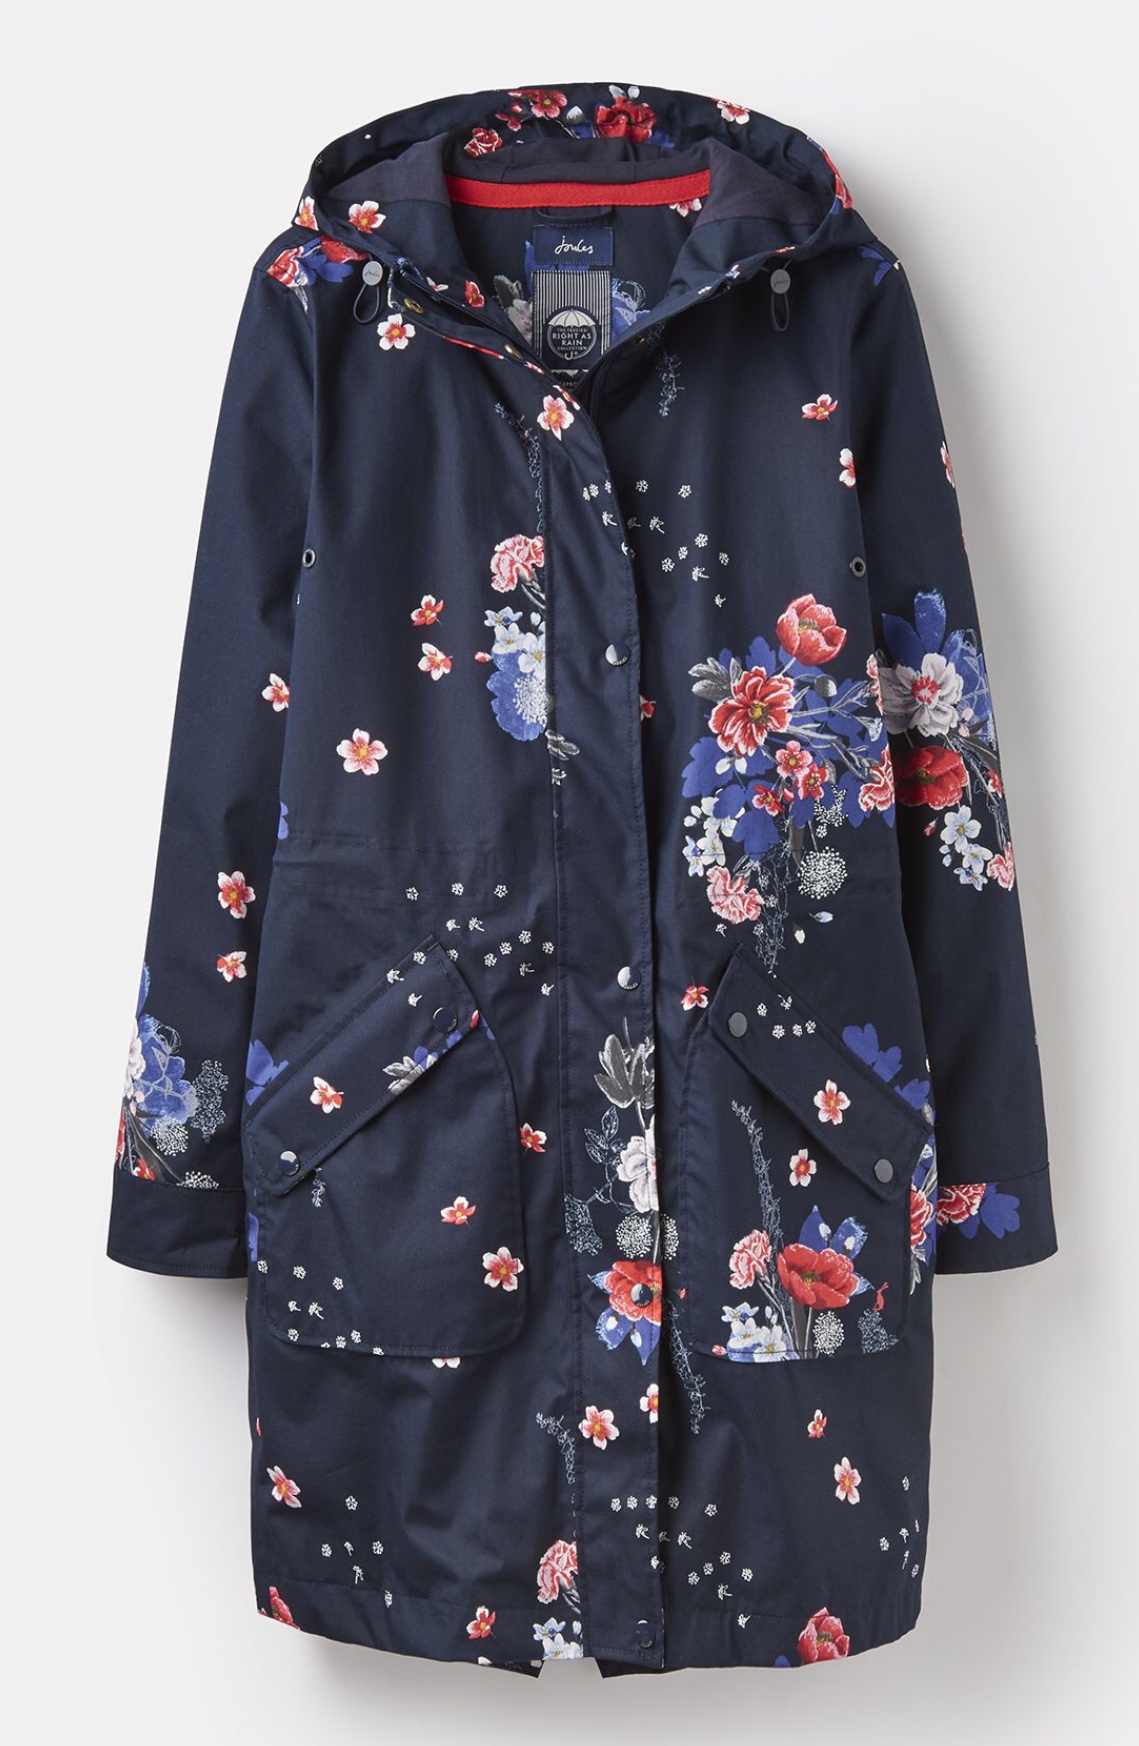 Joules Raine Waterproof Jacket - Navy Floral